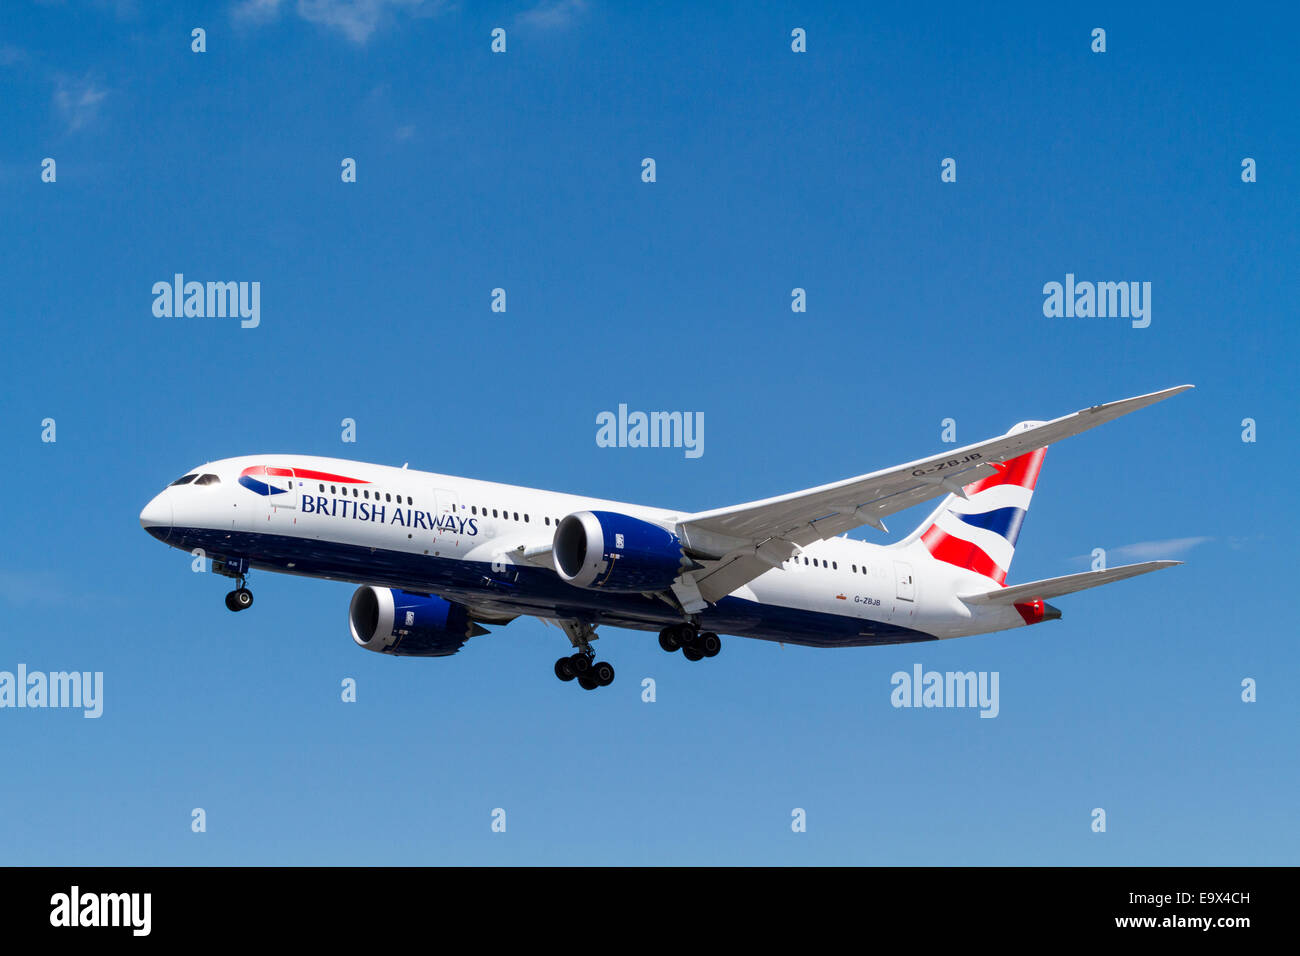 BA-Ebene. British Airways Boeing 787 Flugzeug, G-ZBJB im Landeanflug in London Heathrow, England, Großbritannien Stockfoto